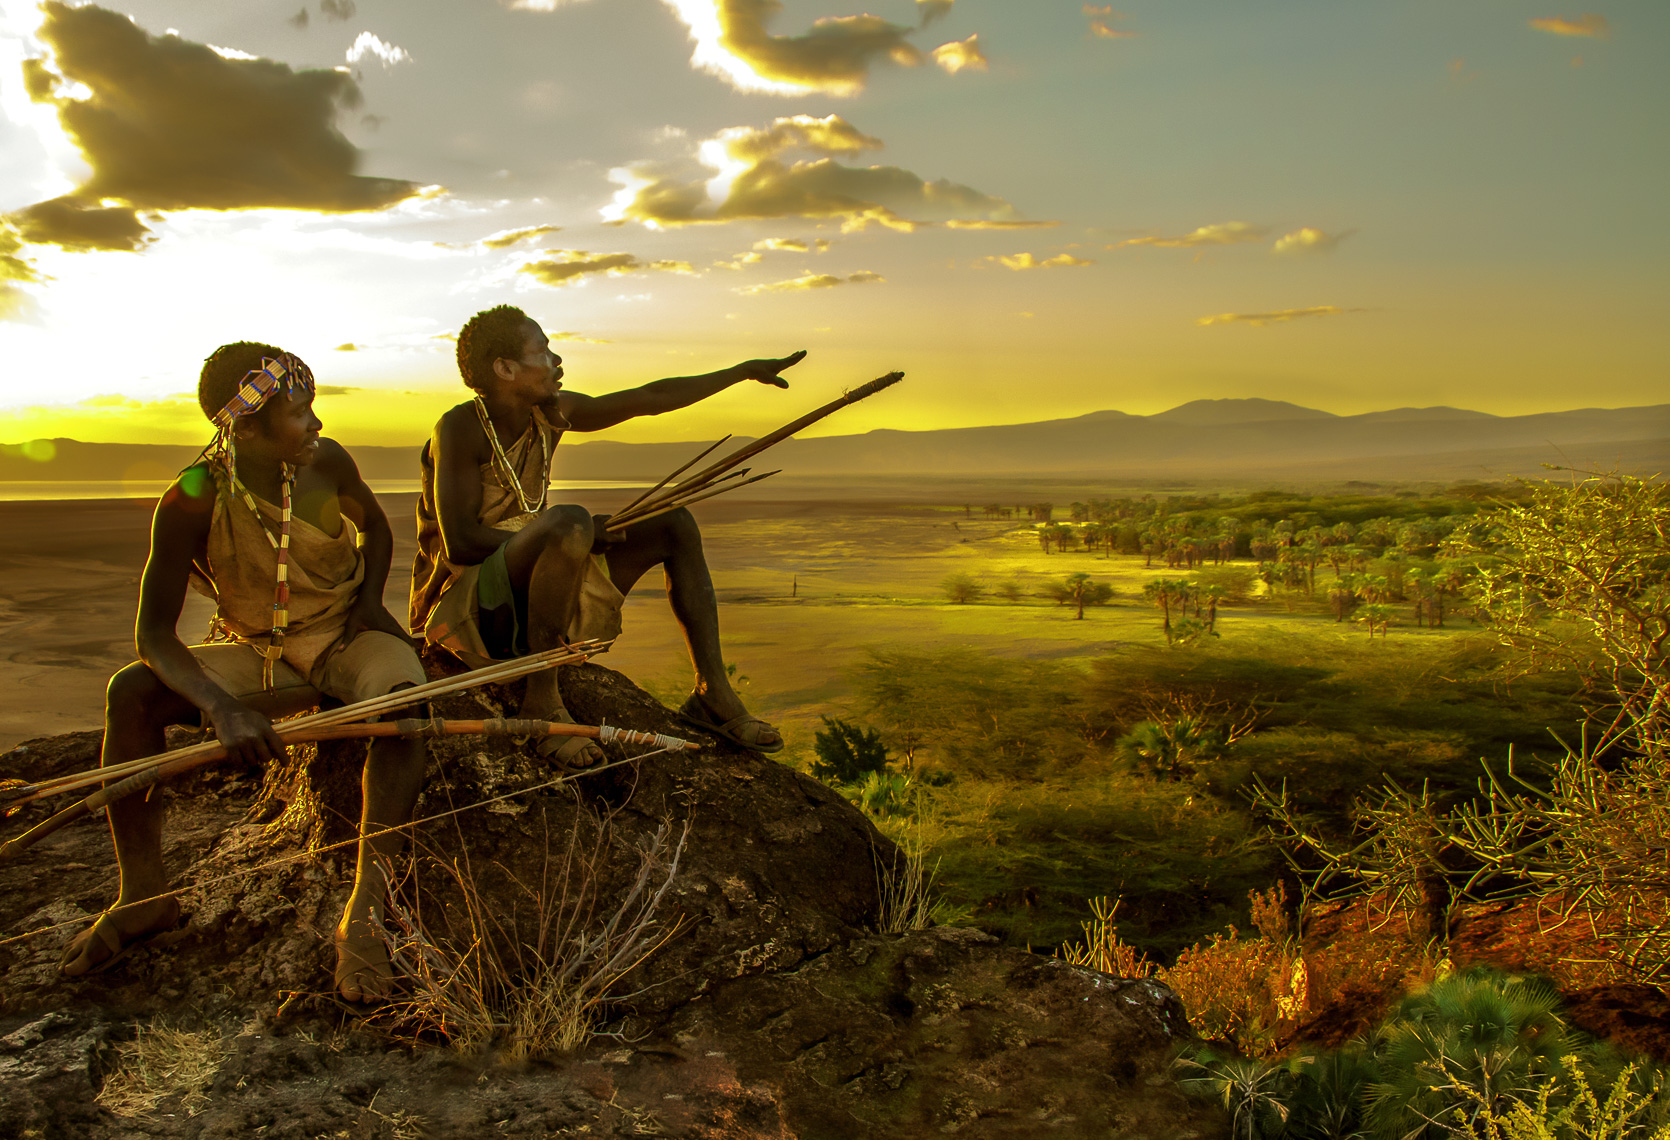  Hadza Hunters at Sunset, Tanzania